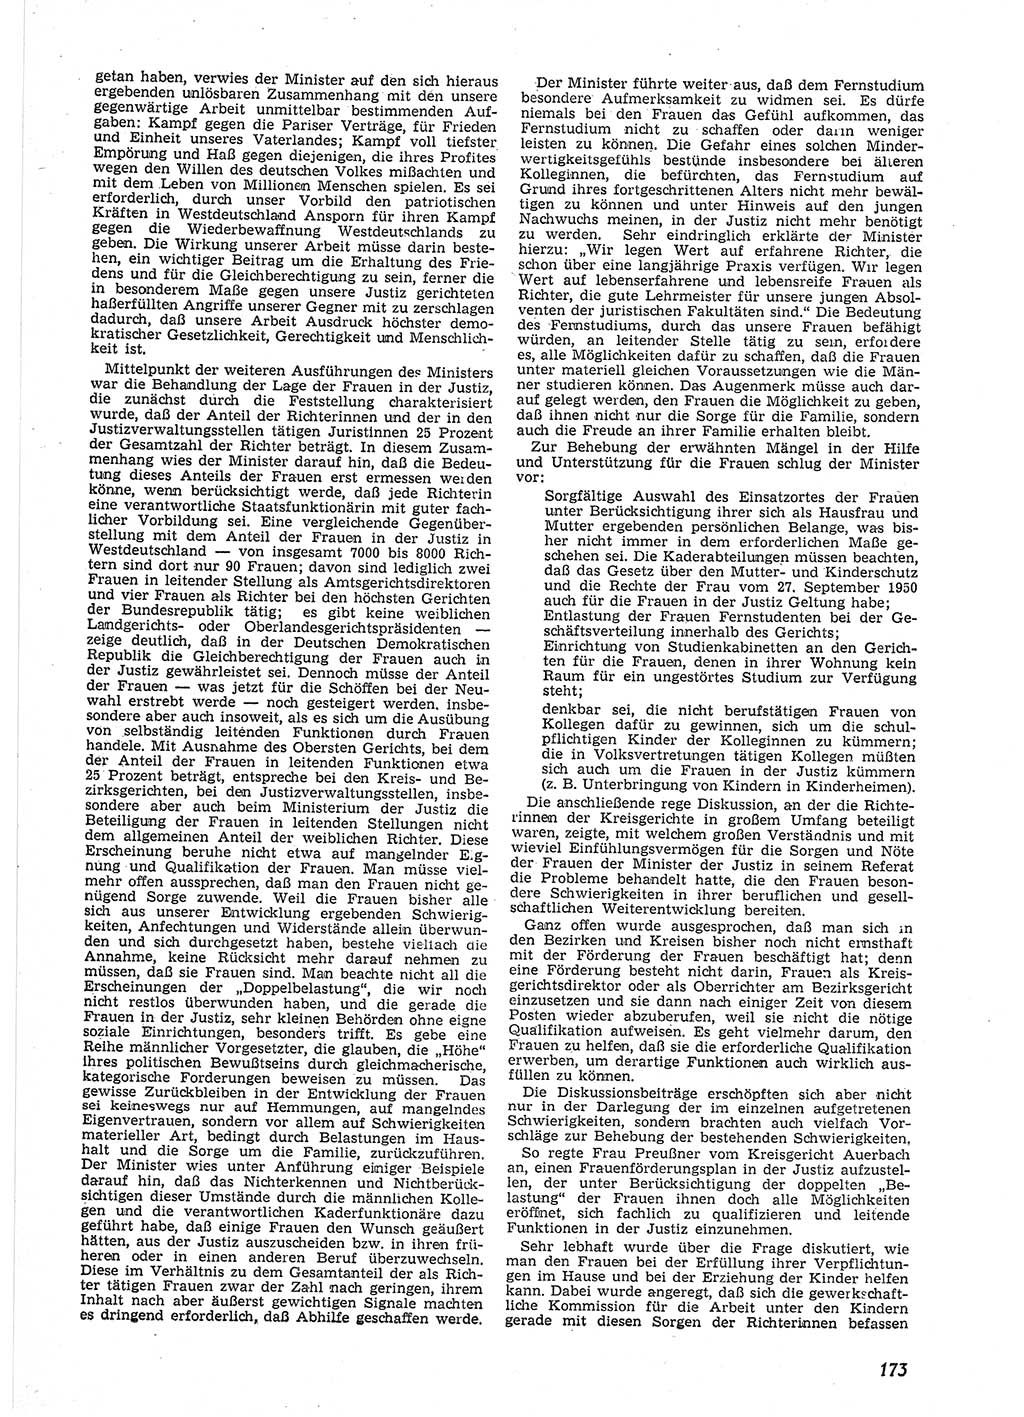 Neue Justiz (NJ), Zeitschrift für Recht und Rechtswissenschaft [Deutsche Demokratische Republik (DDR)], 9. Jahrgang 1955, Seite 173 (NJ DDR 1955, S. 173)